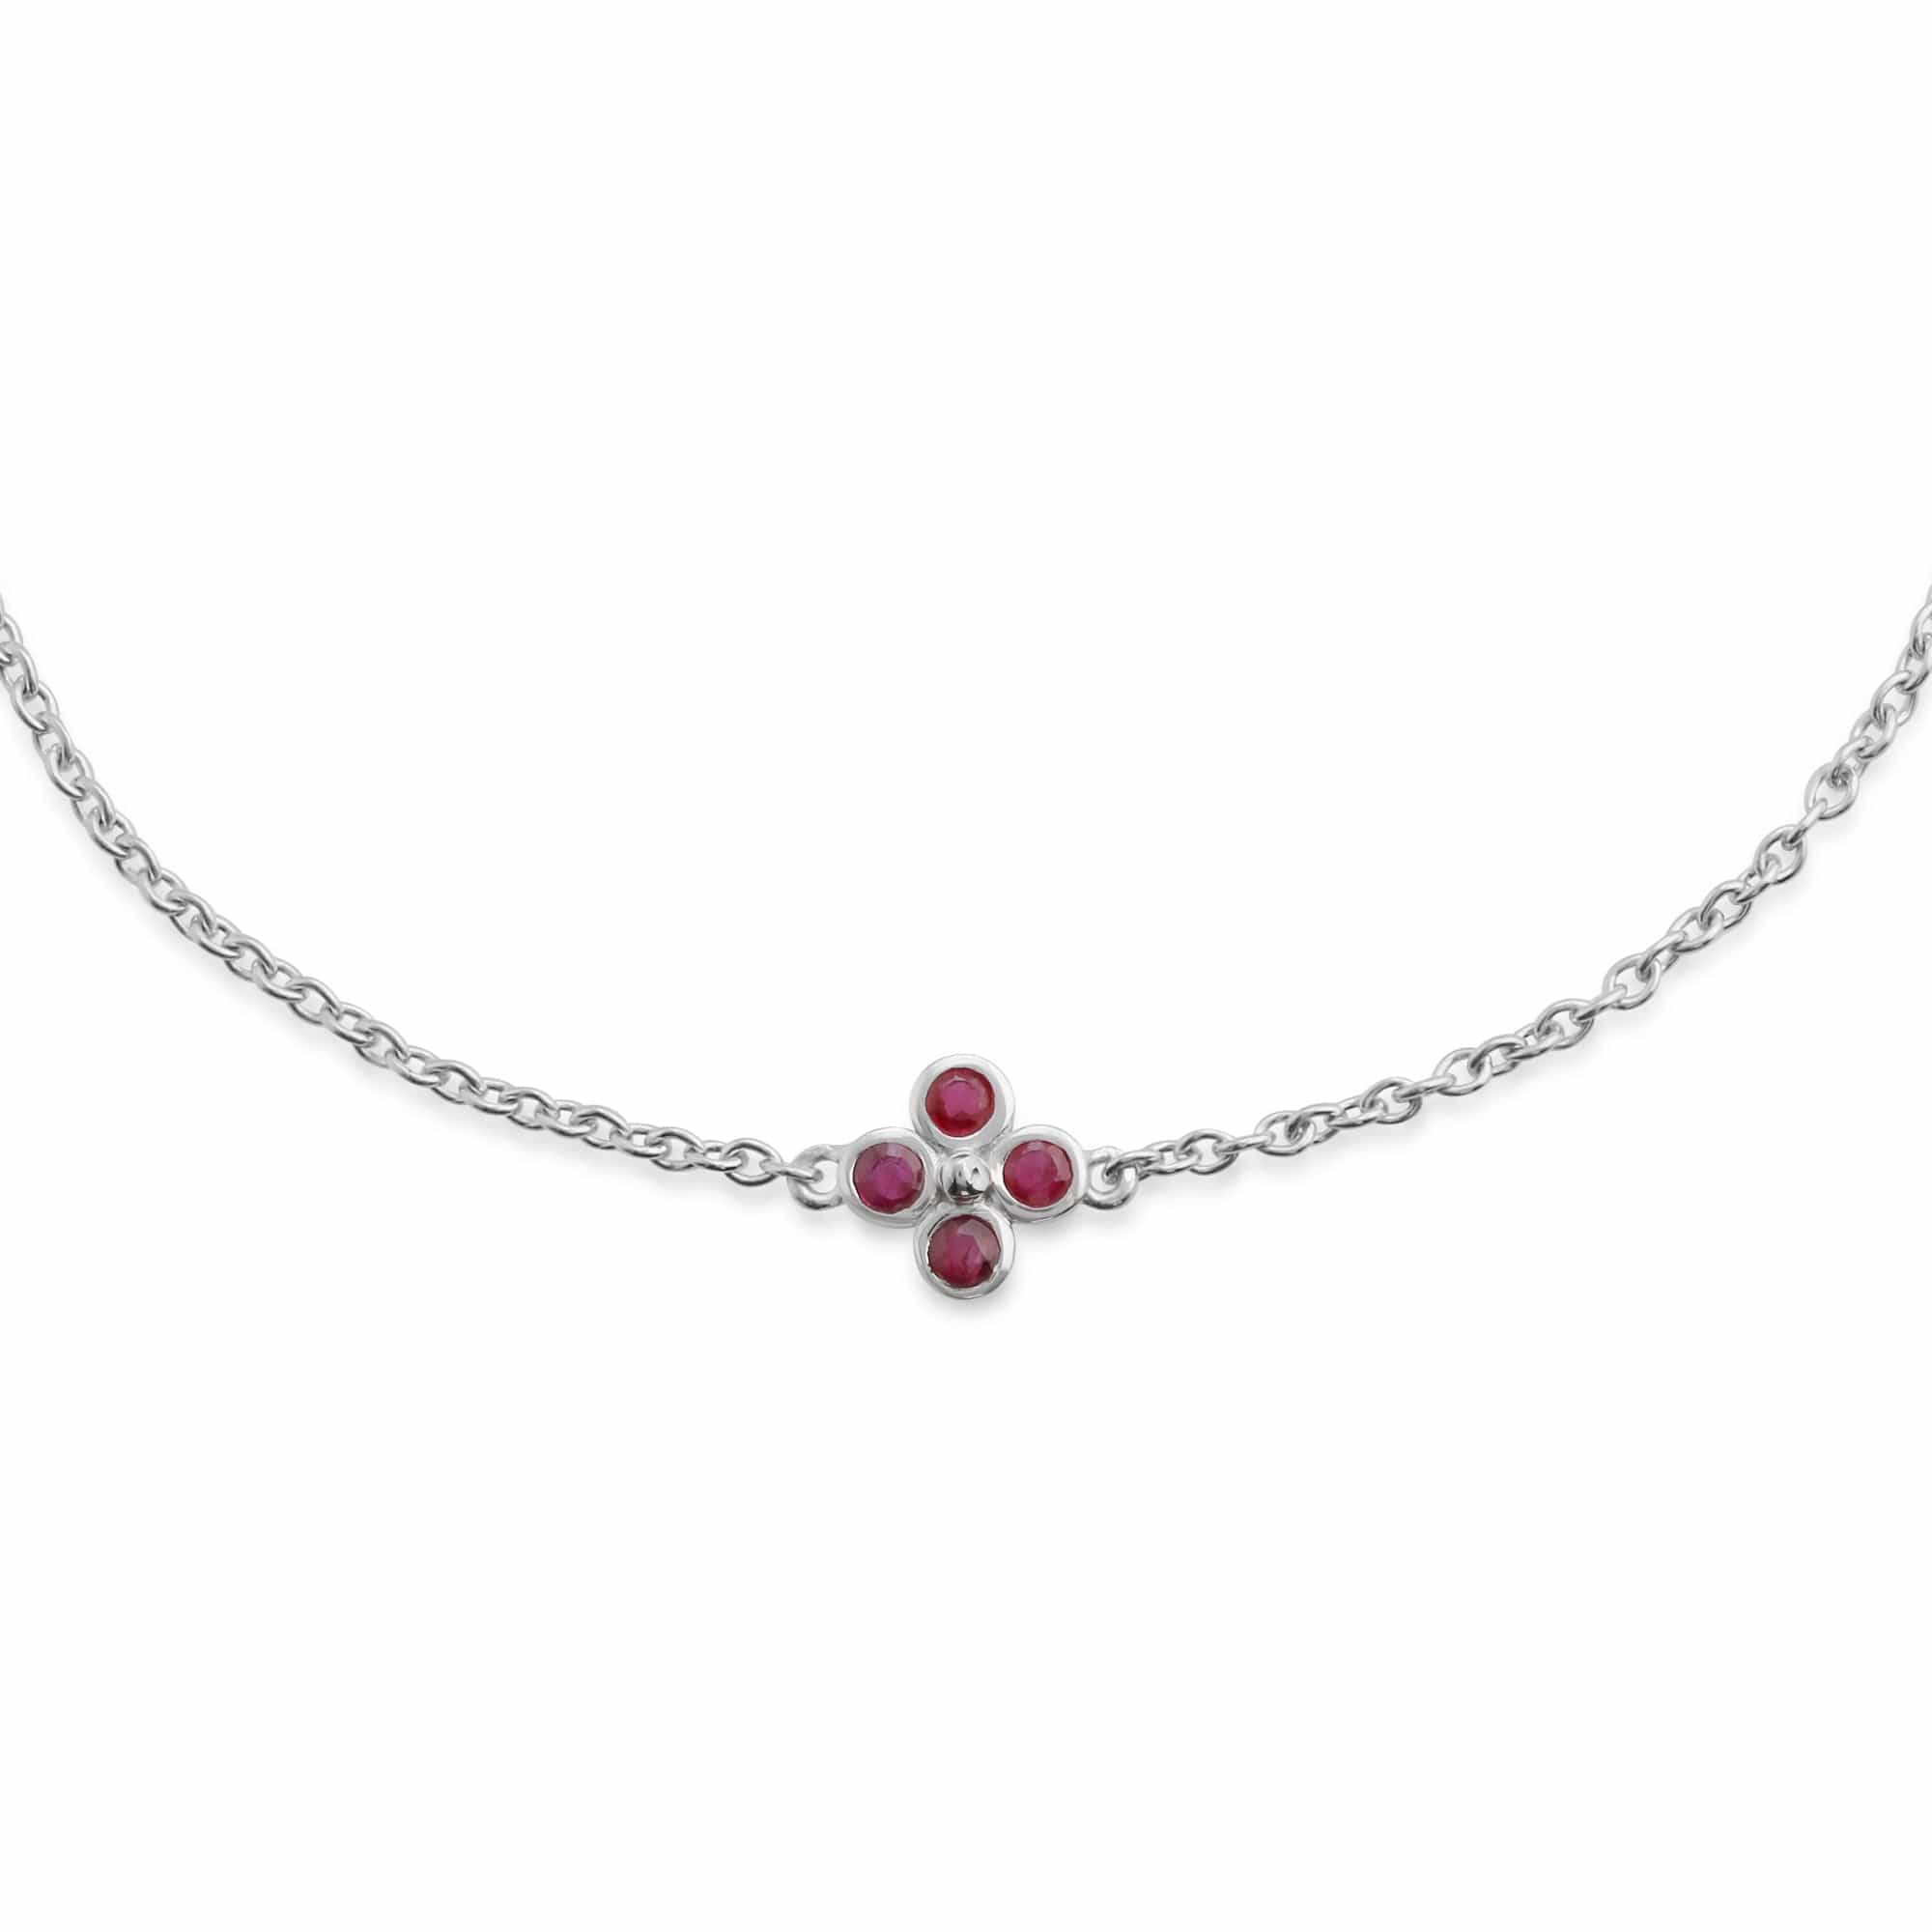 Floral Round Ruby Bezel Set Clover Bracelet in Sterling Silver - Gemondo